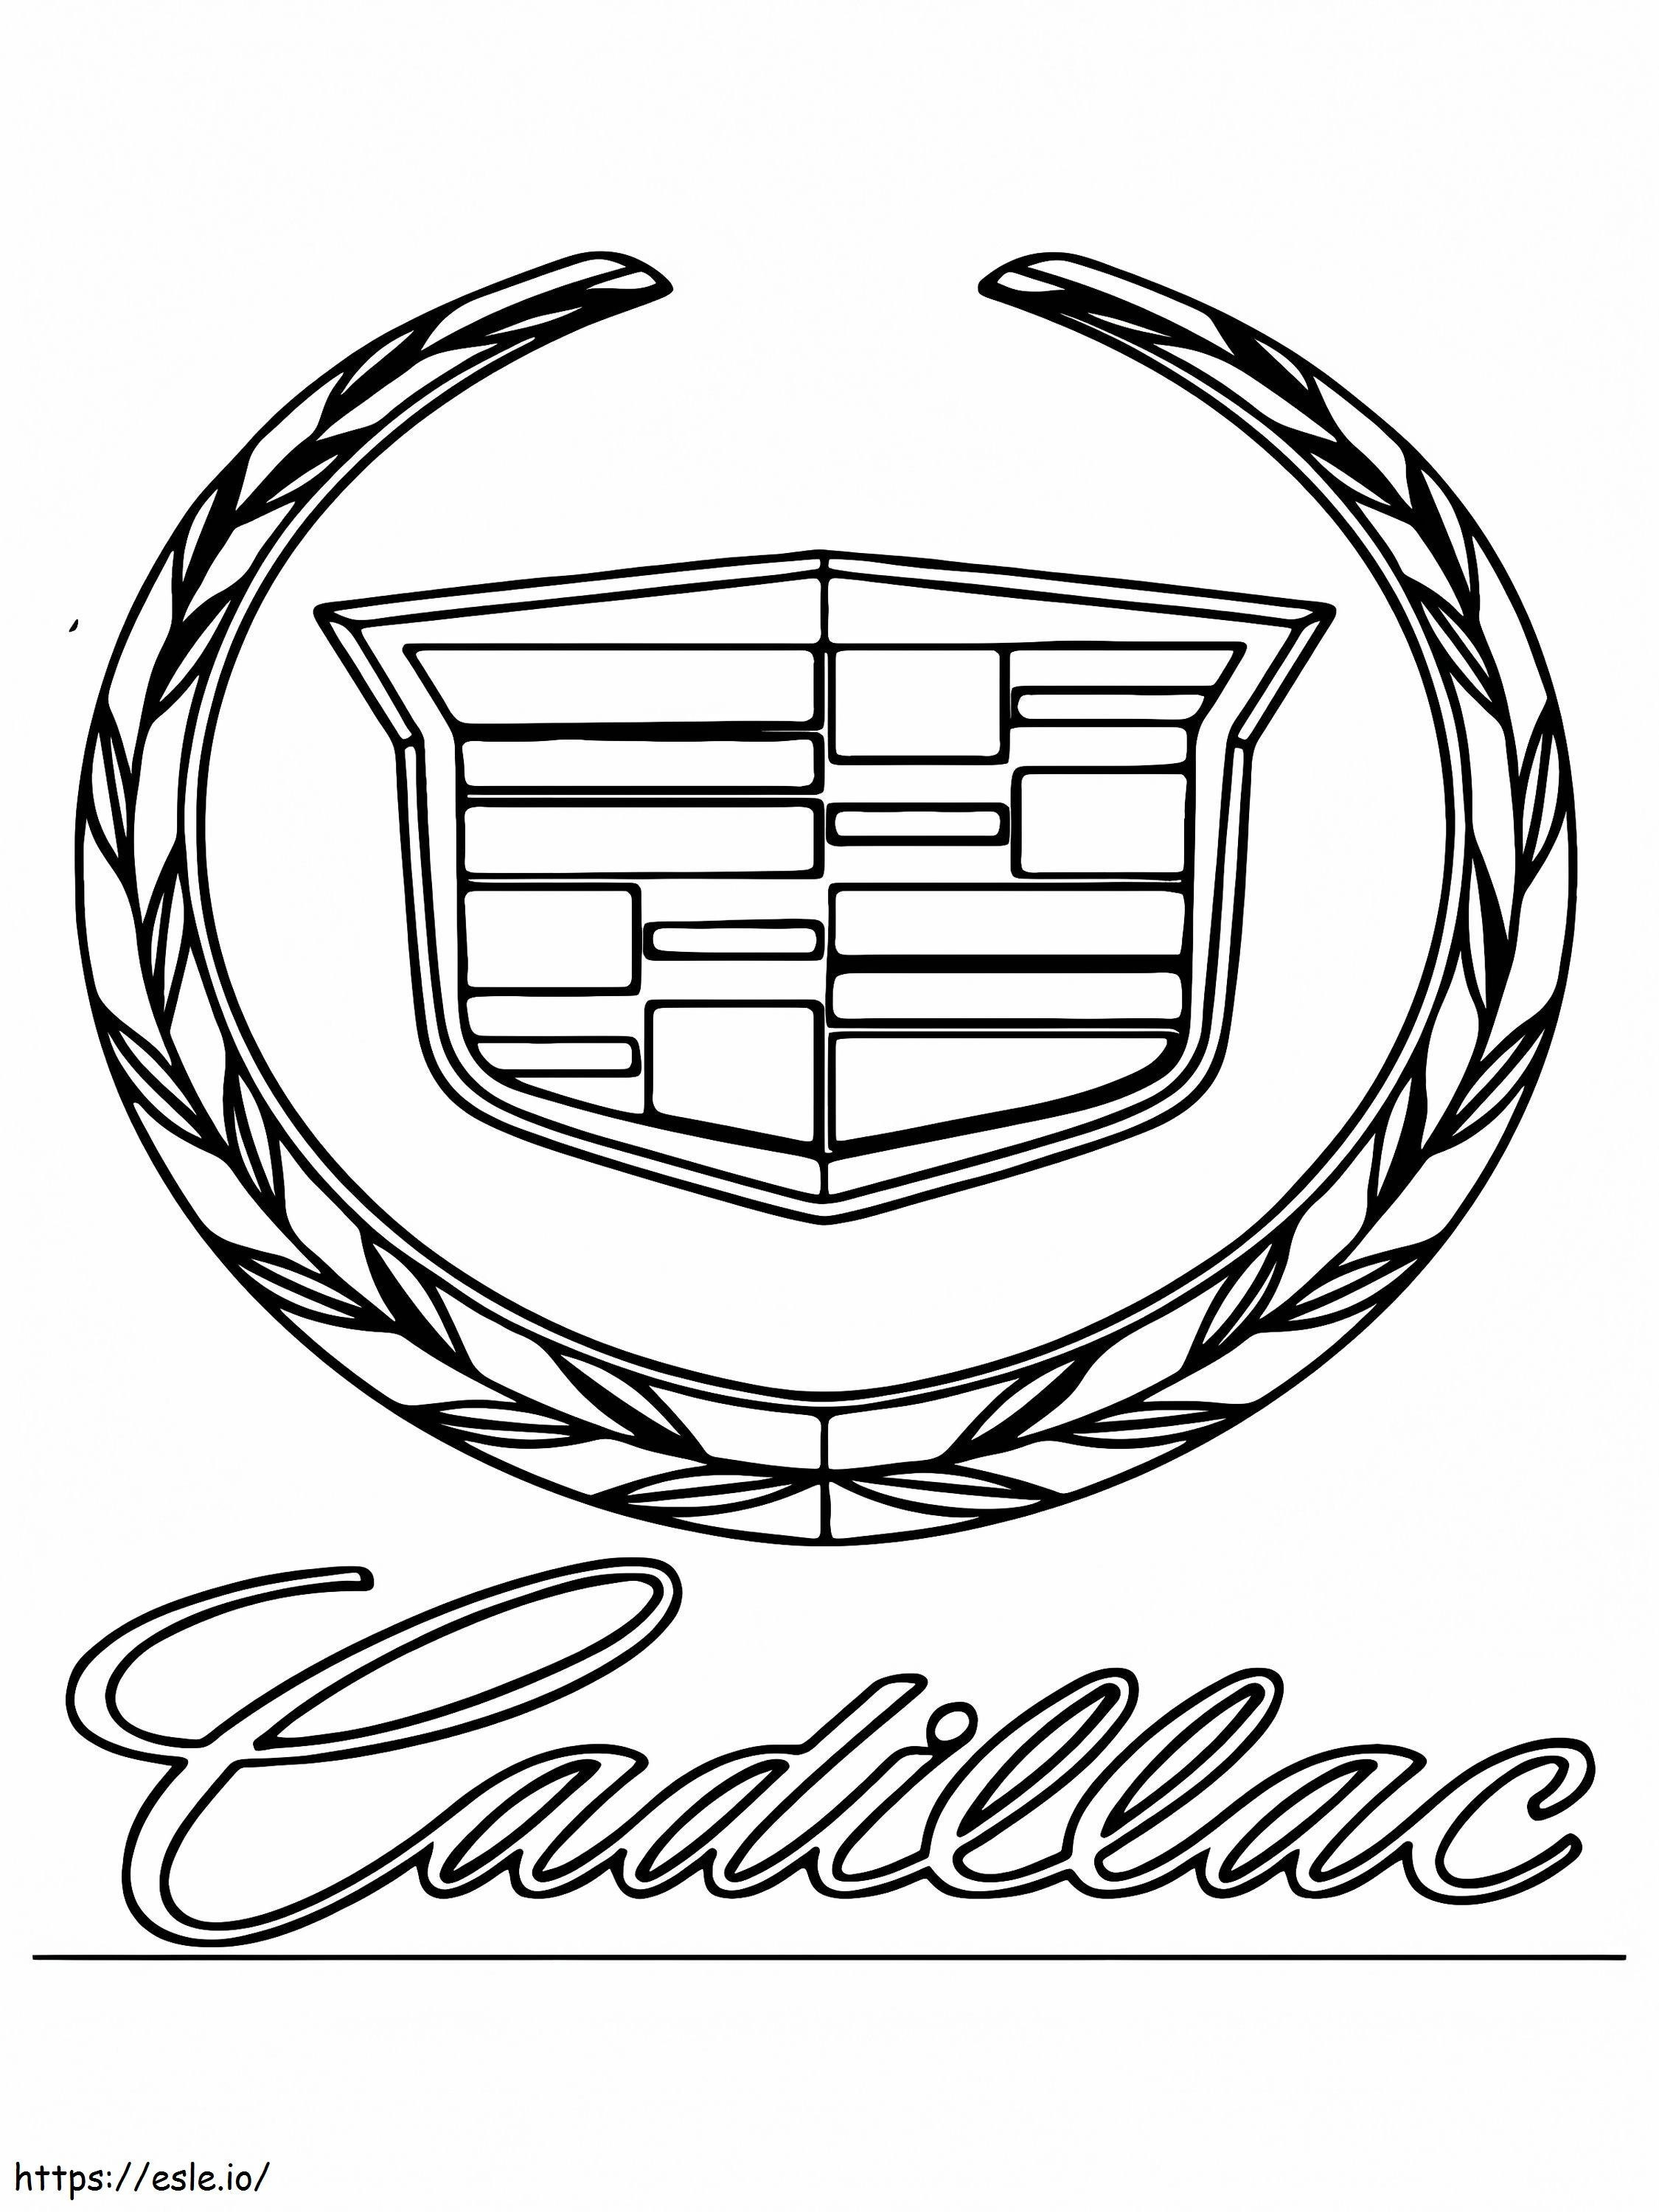 Logo dell'auto Cadillac da colorare